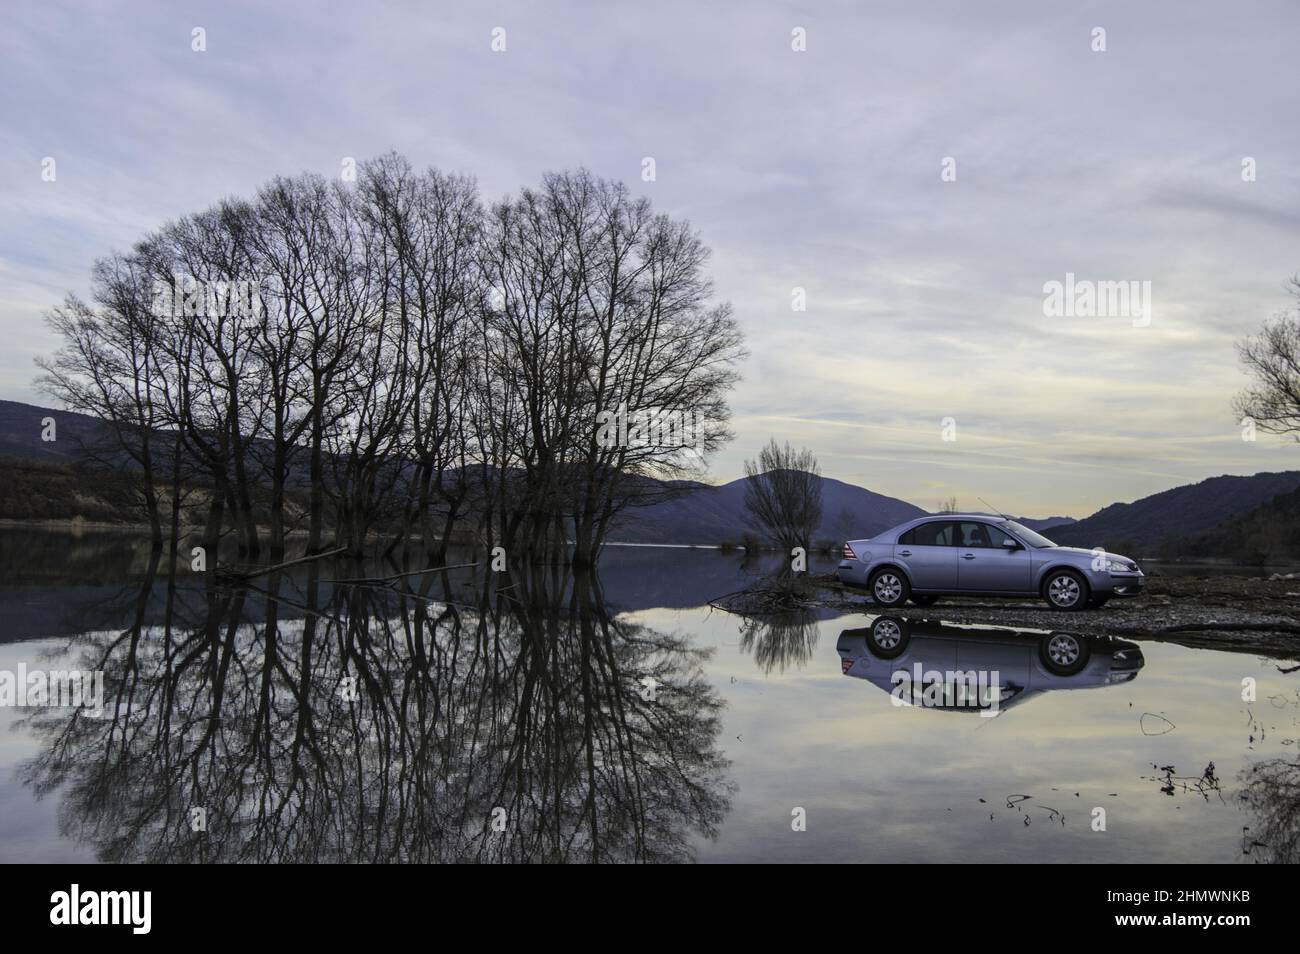 Nahaufnahme des weichen blauen Ford Mondeo MK3 Reisewagens Stockfotografie  - Alamy